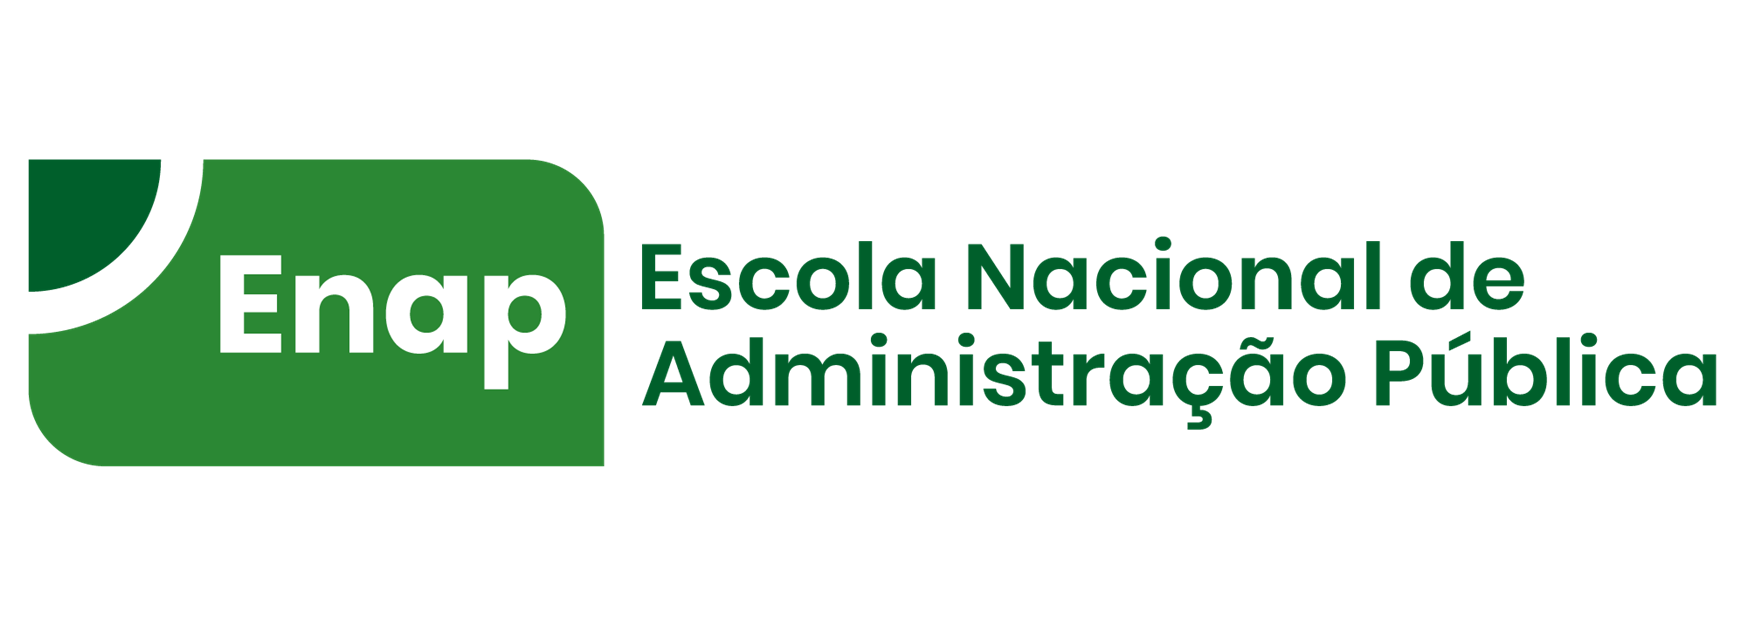 ENAP - Escola Ncional de Administração Pública